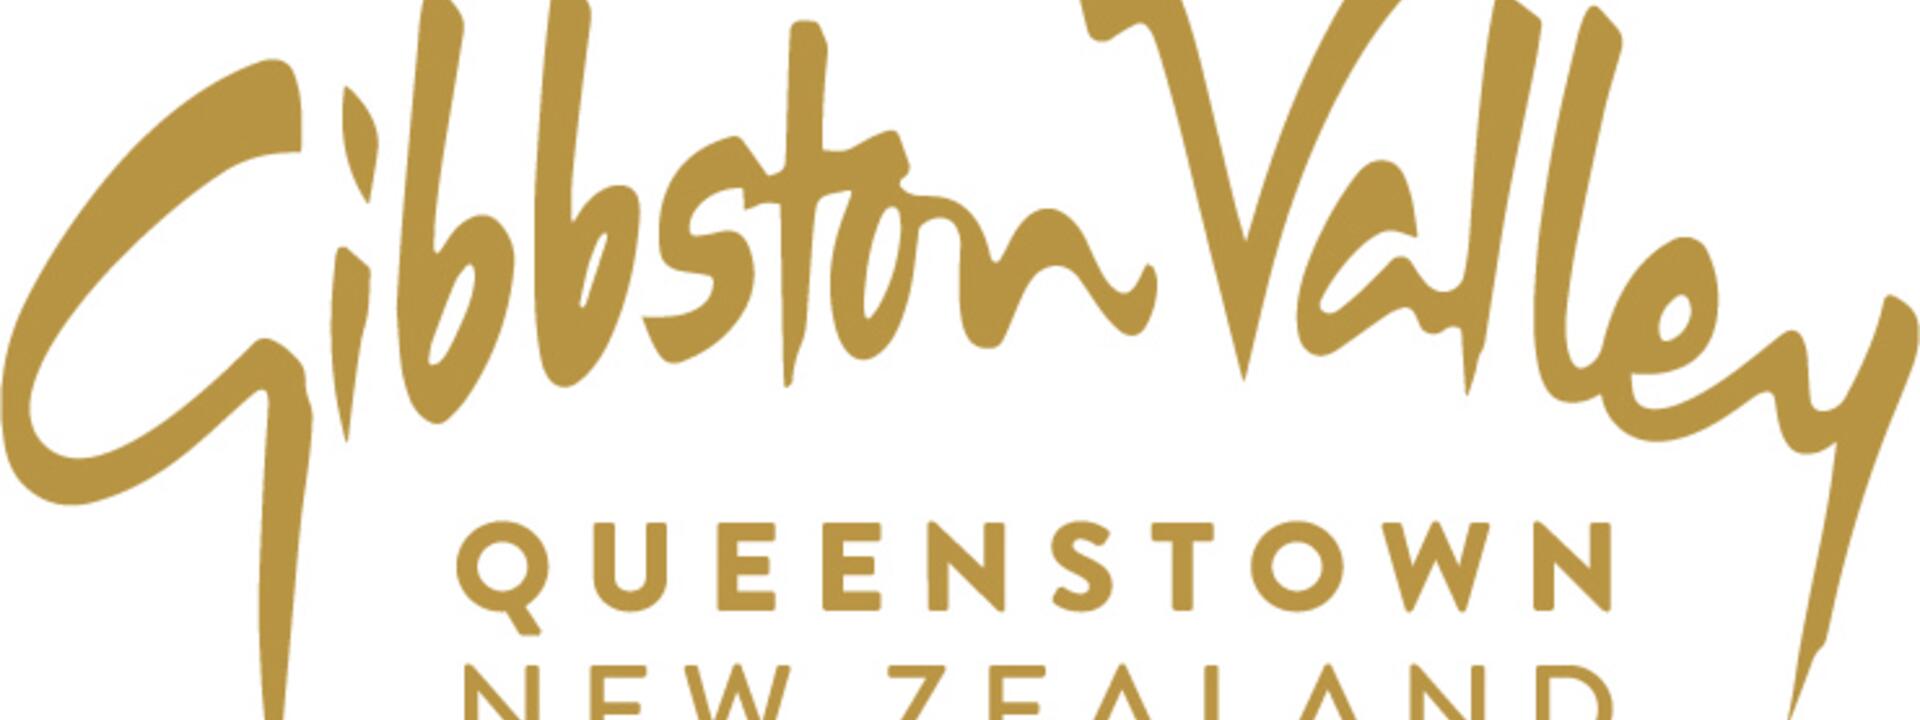 queenstown-new-zealand-logo.jpg